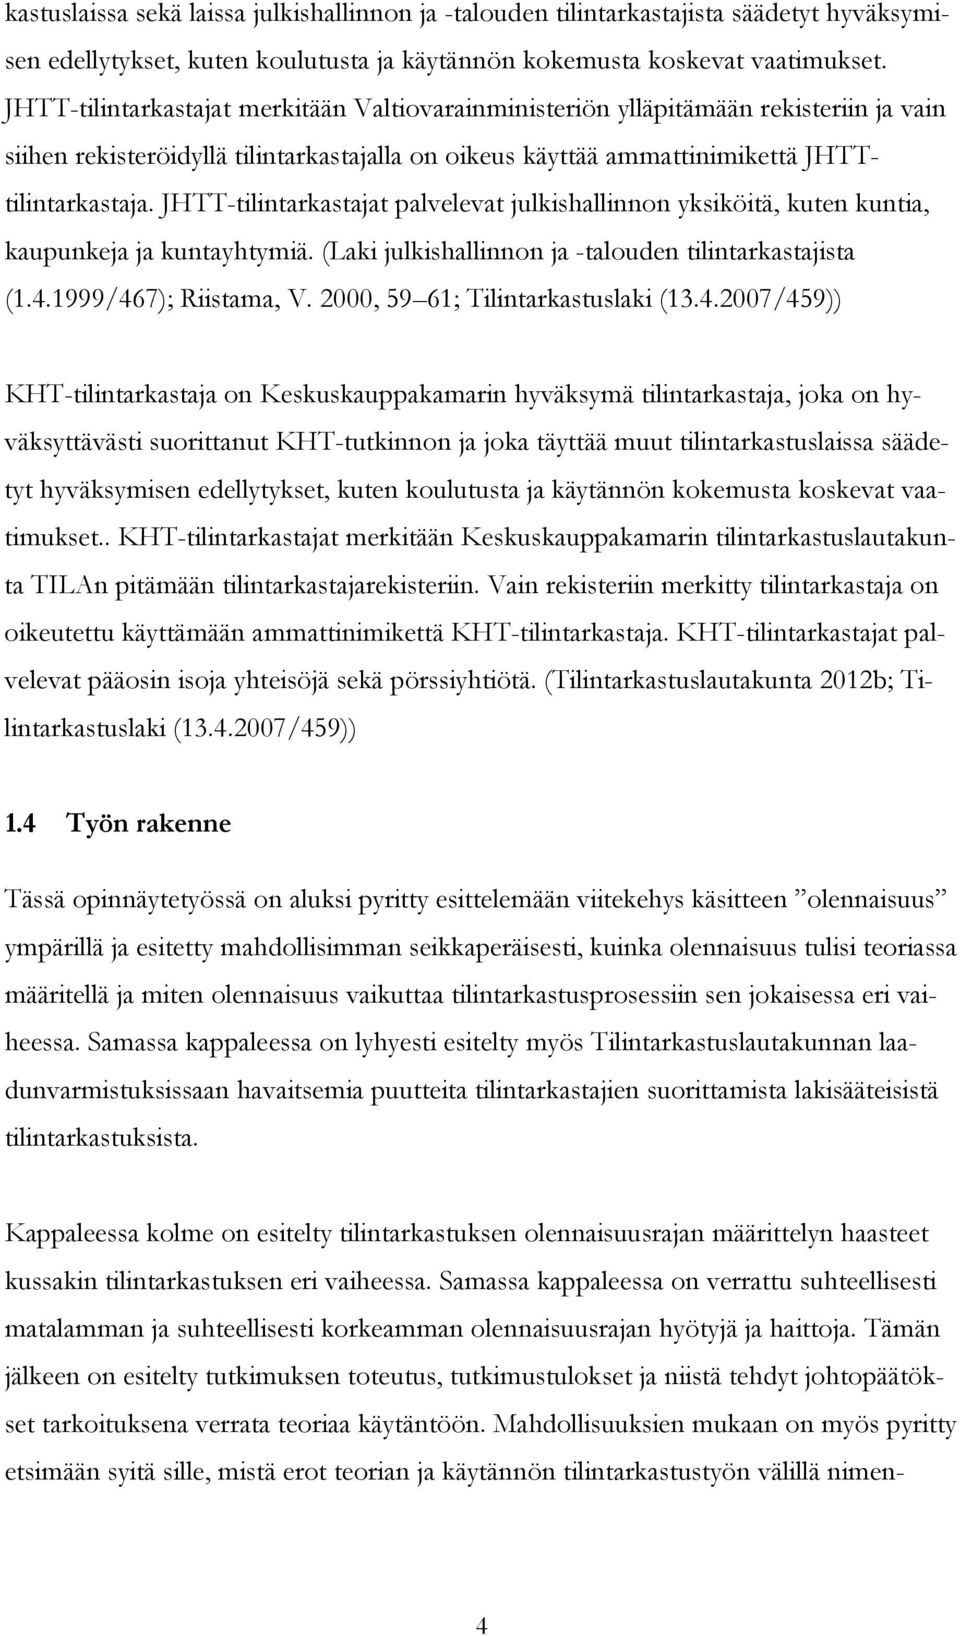 JHTT-tilintarkastajat palvelevat julkishallinnon yksiköitä, kuten kuntia, kaupunkeja ja kuntayhtymiä. (Laki julkishallinnon ja -talouden tilintarkastajista (1.4.1999/467); Riistama, V.